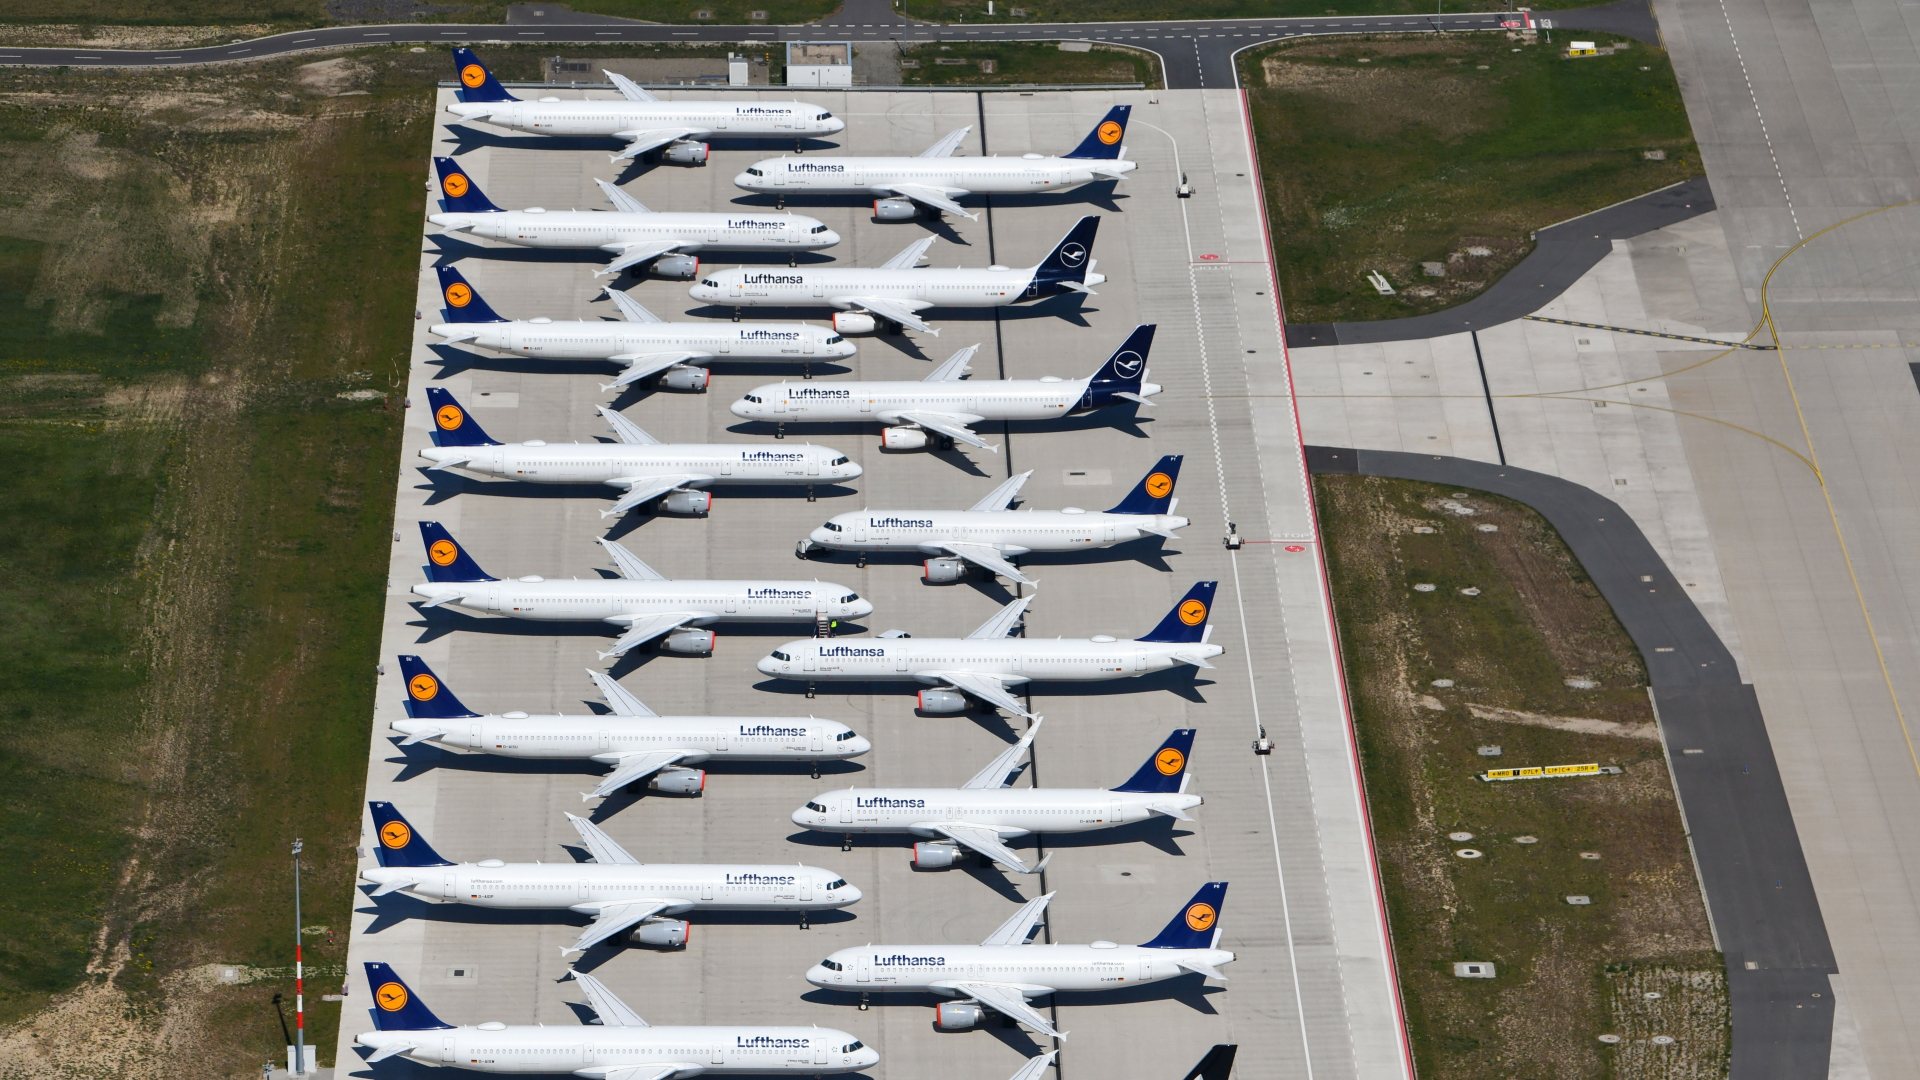 Lufthansa-Maschinen auf dem Flughafen Berlin-Schönefeld | OLIVER LANG/EPA-EFE/Shutterstock